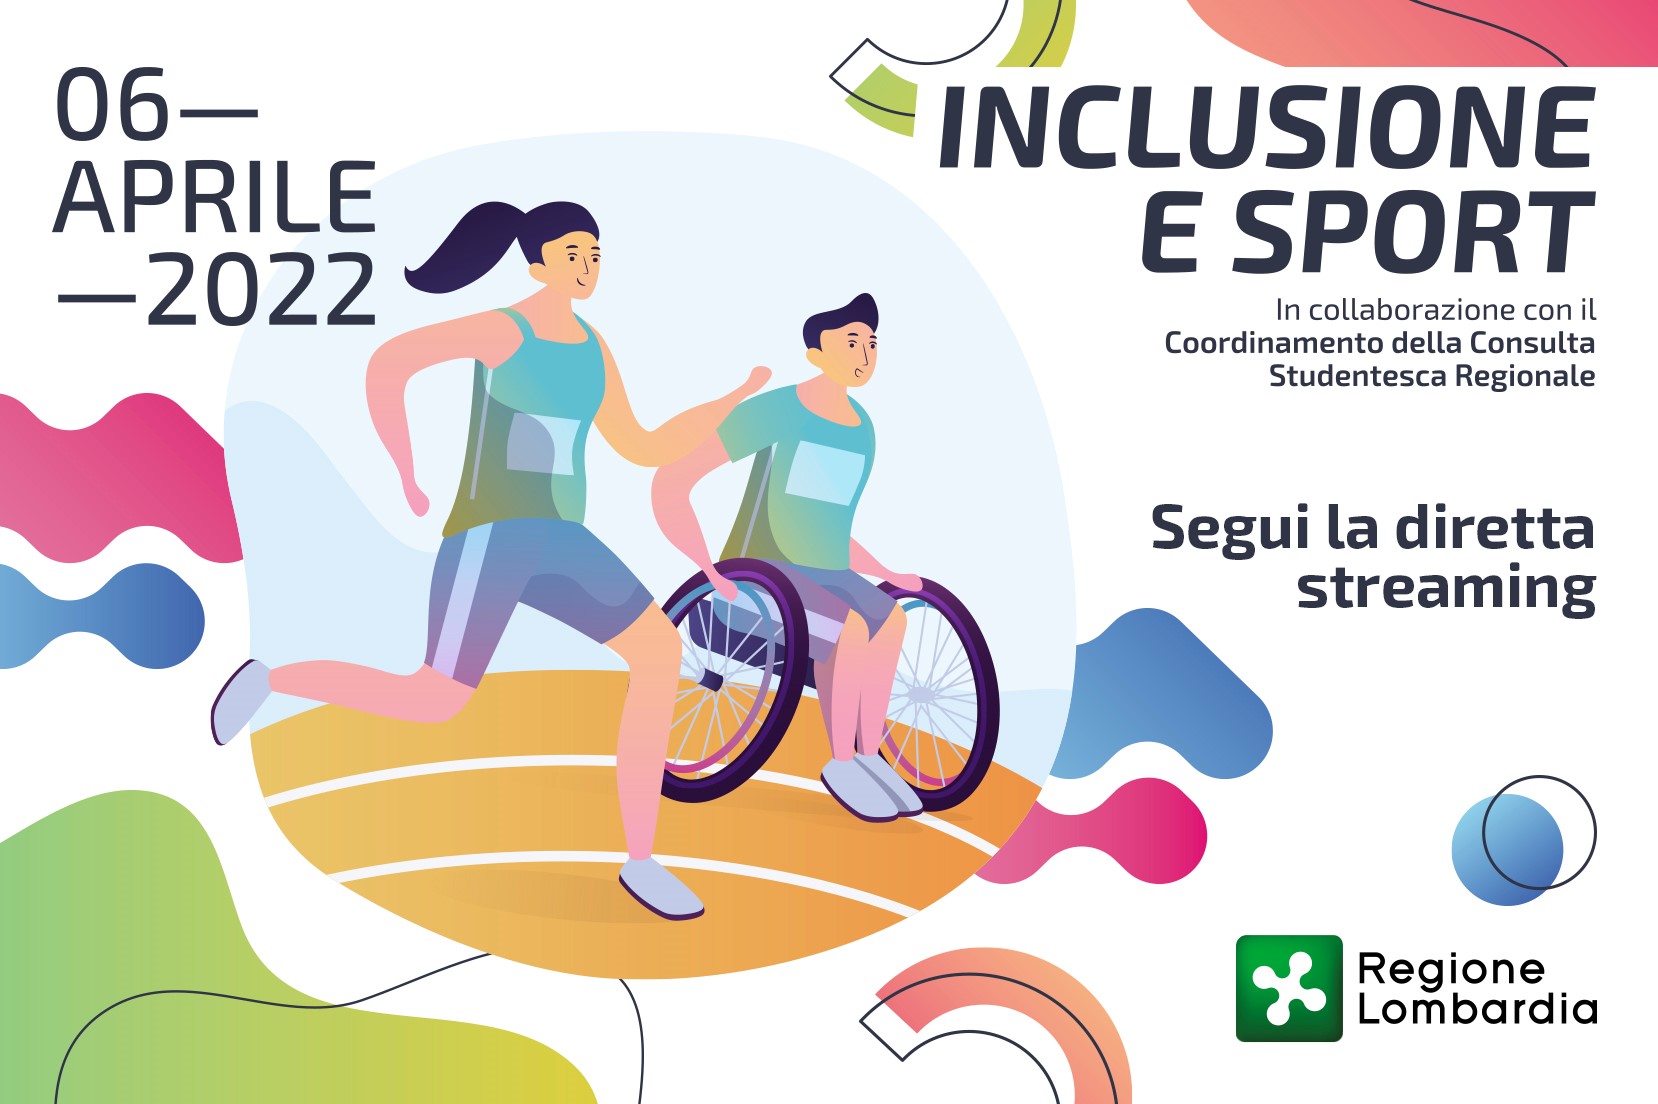 Inclusione e sport